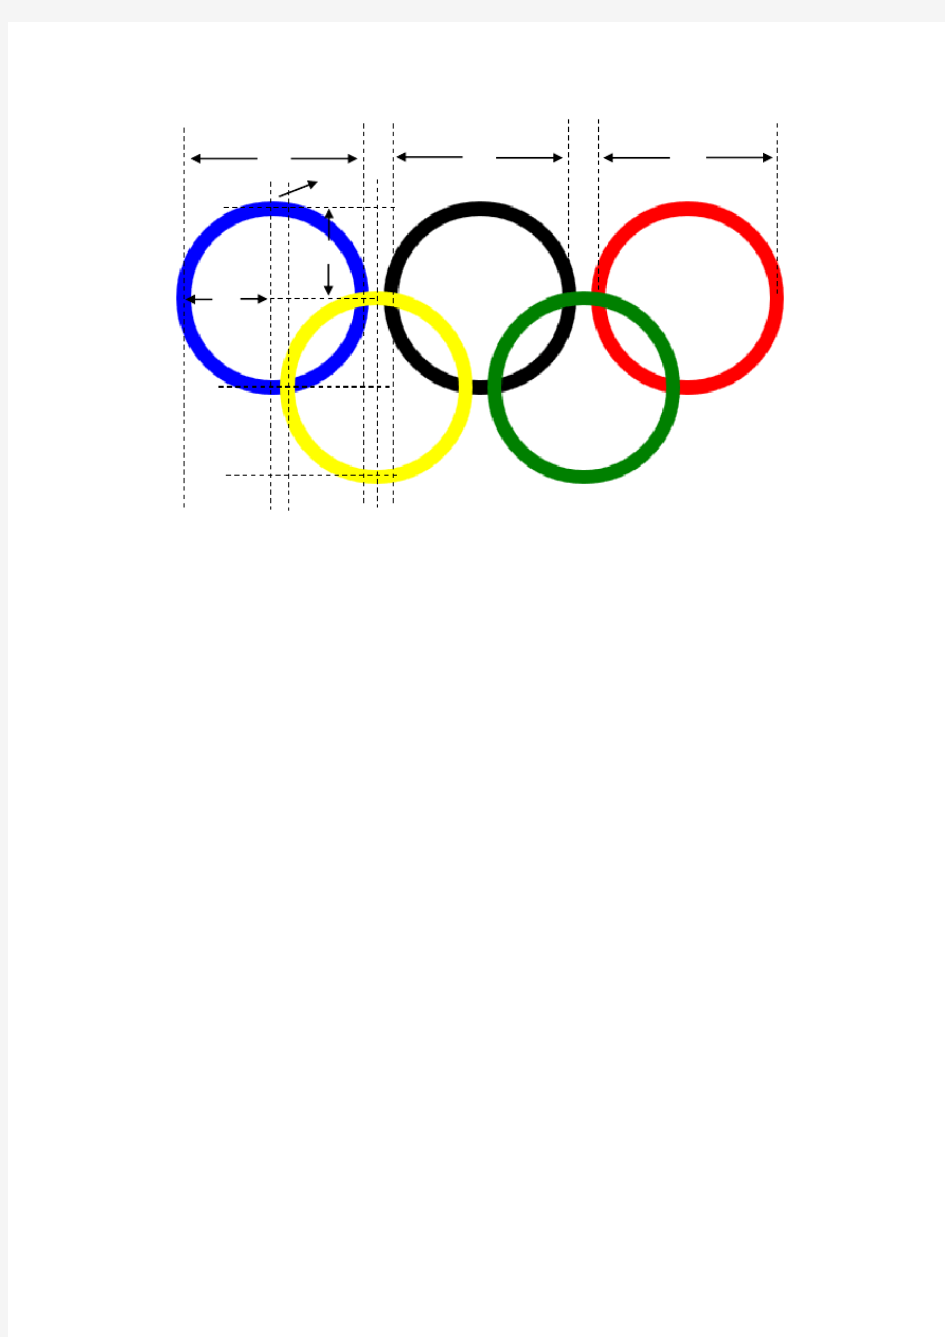 奥运五环旗尺寸图